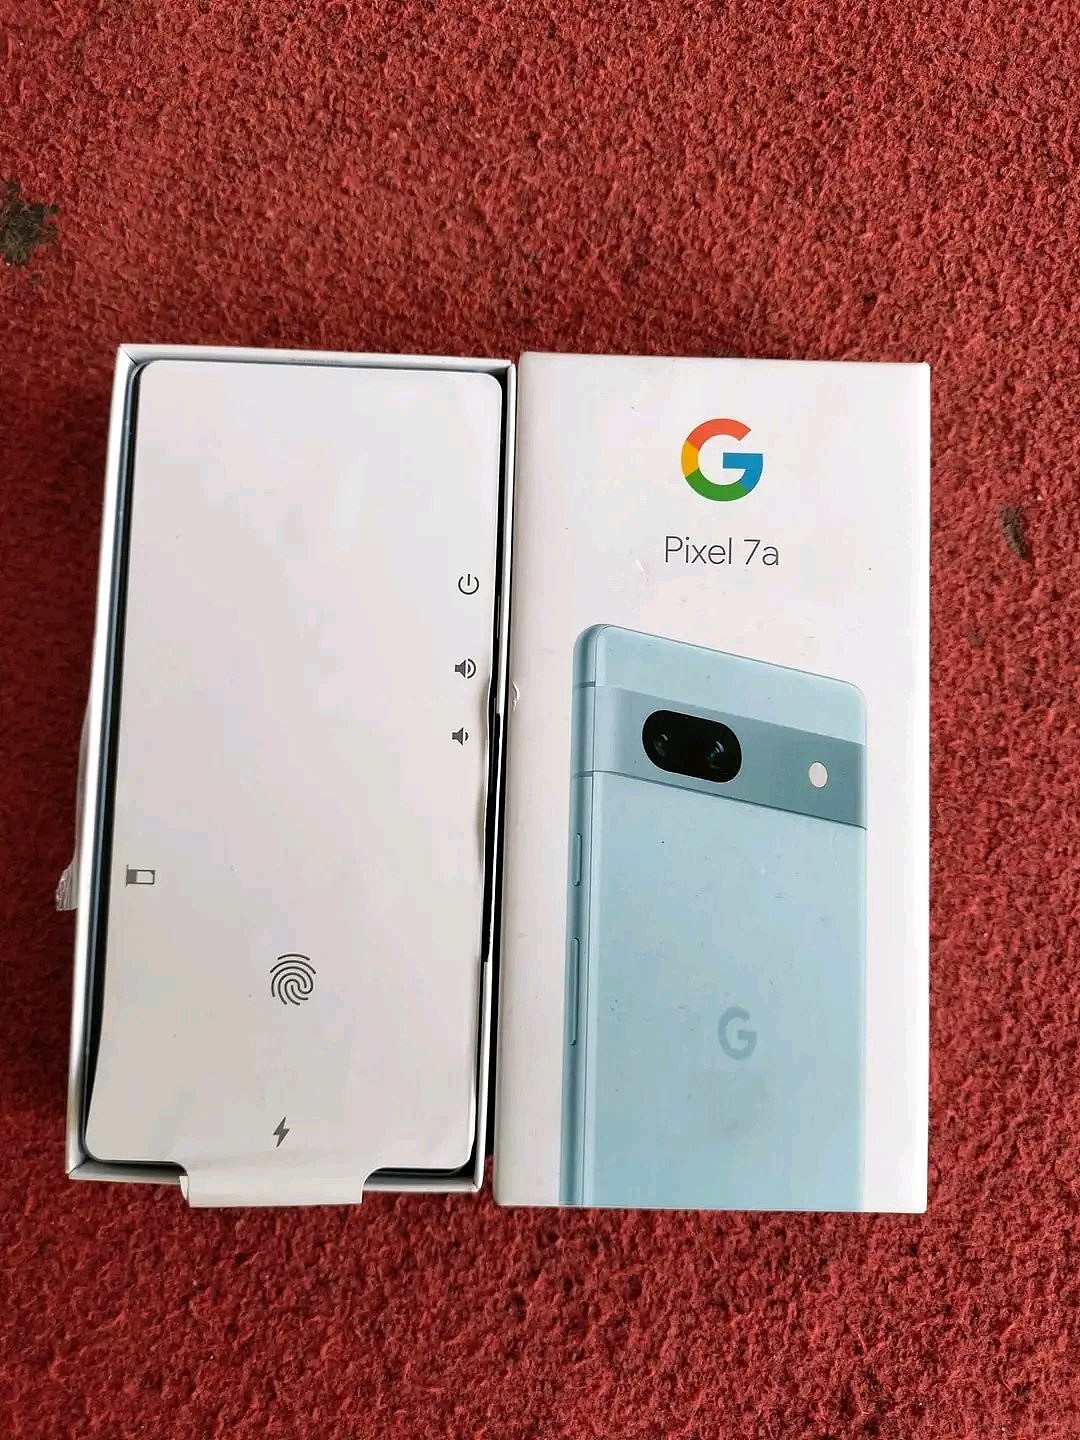 北极蓝和碳灰色谷歌 Pixel 7a 手机照片曝光 - 3